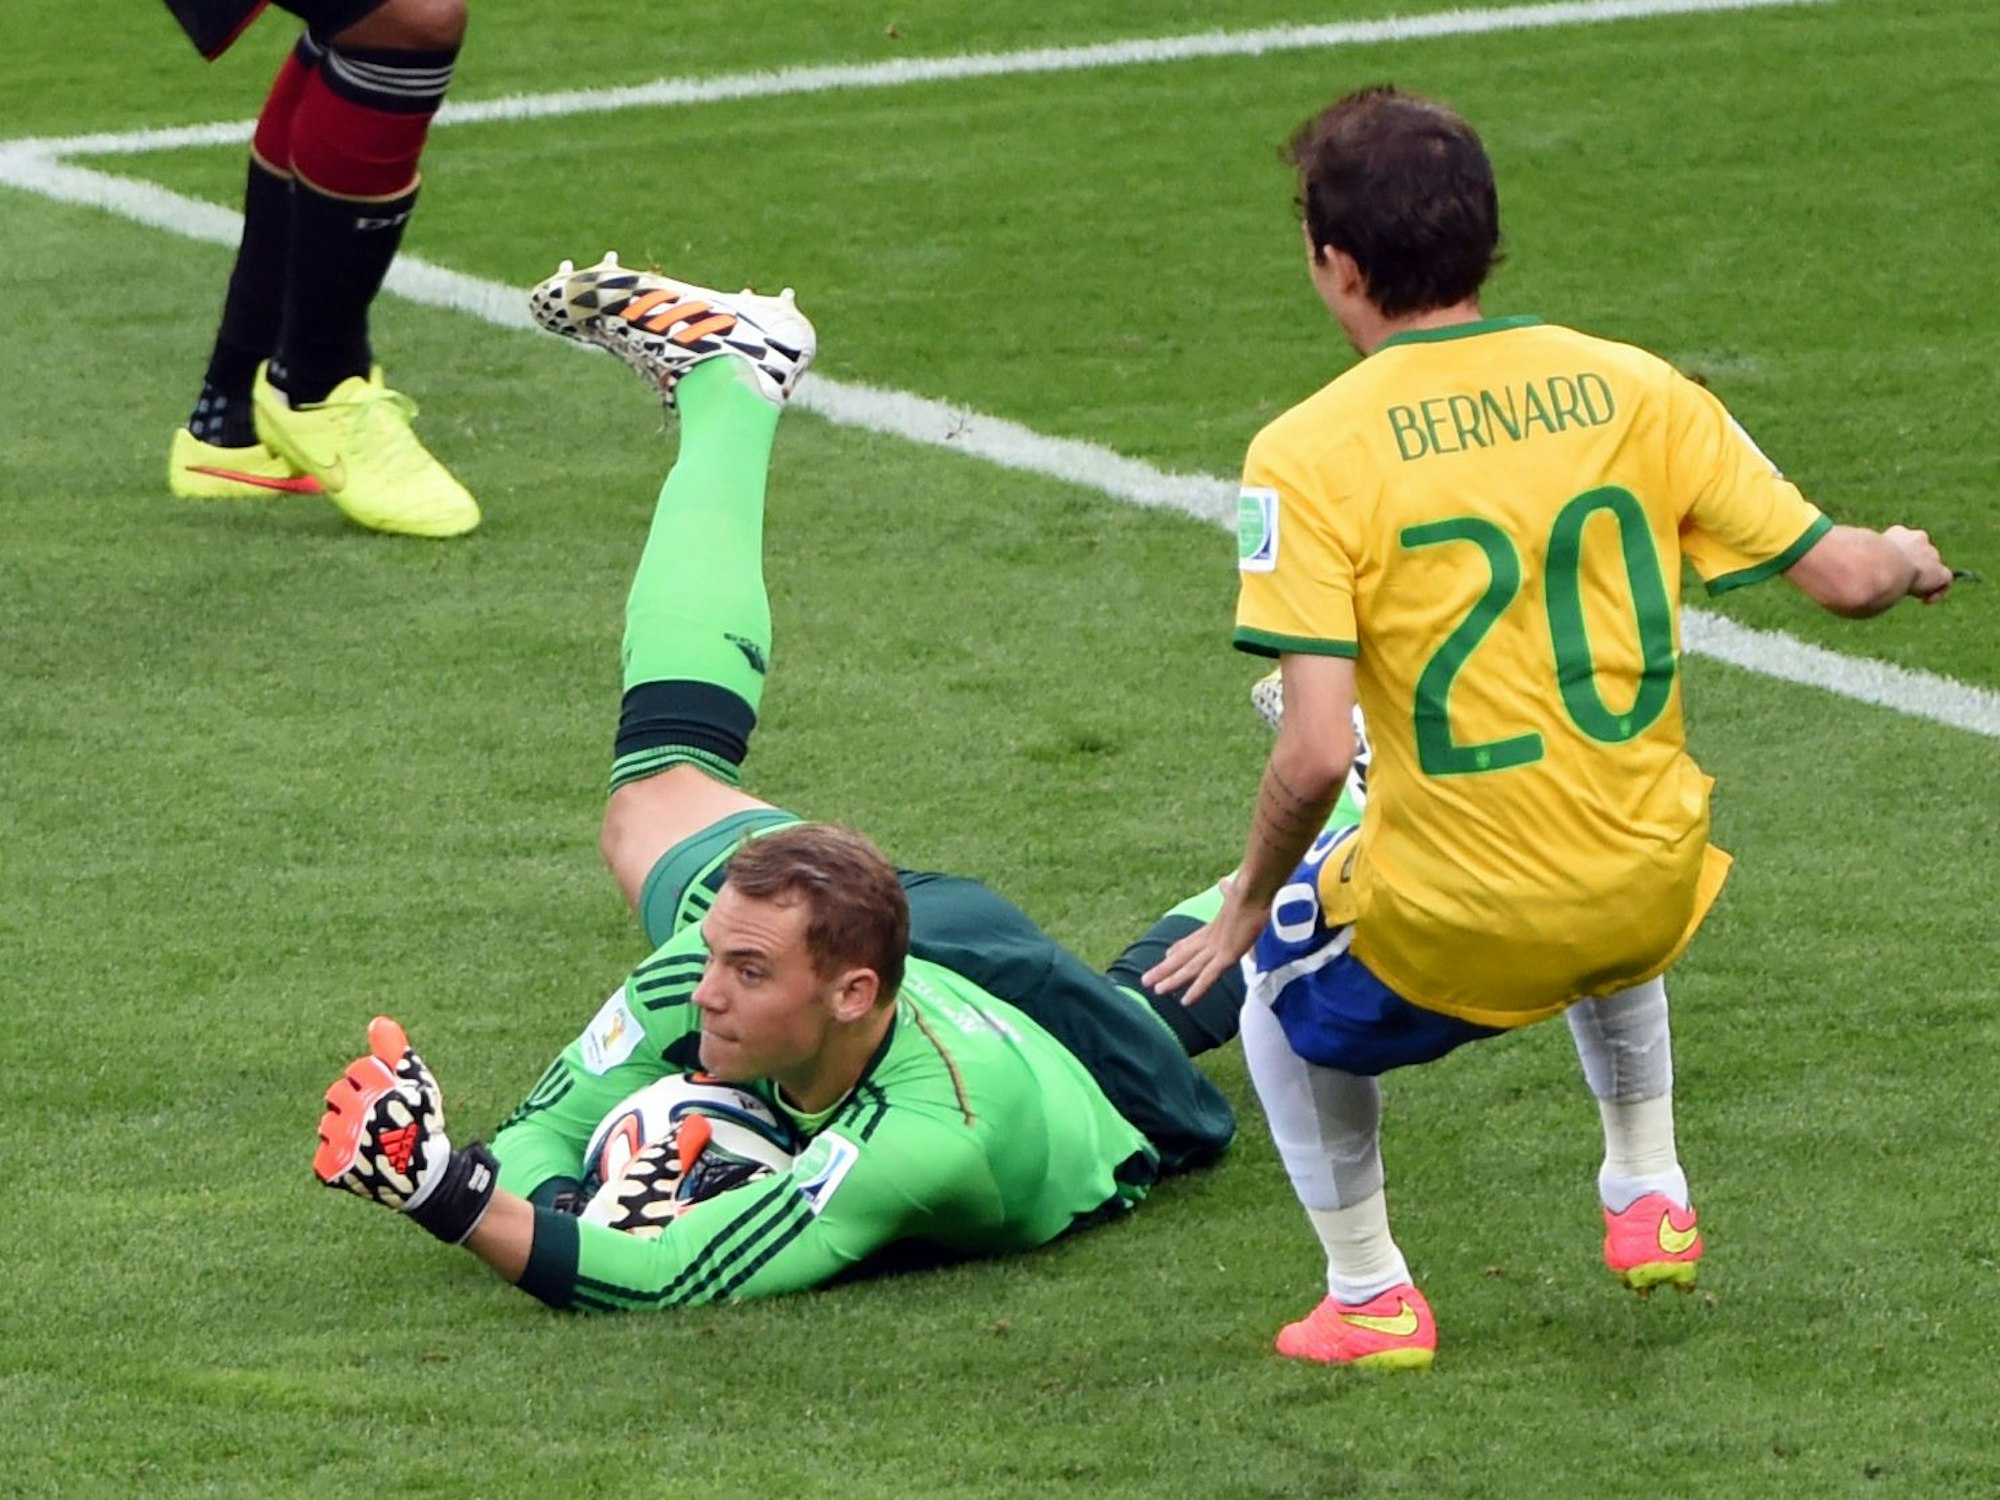 Torwart Manuel Neuer konnte erfolgreichen den Ball abfangen und liegt samt Ball auf dem Boden. Neben ihm steht Brasiliens Bernard.